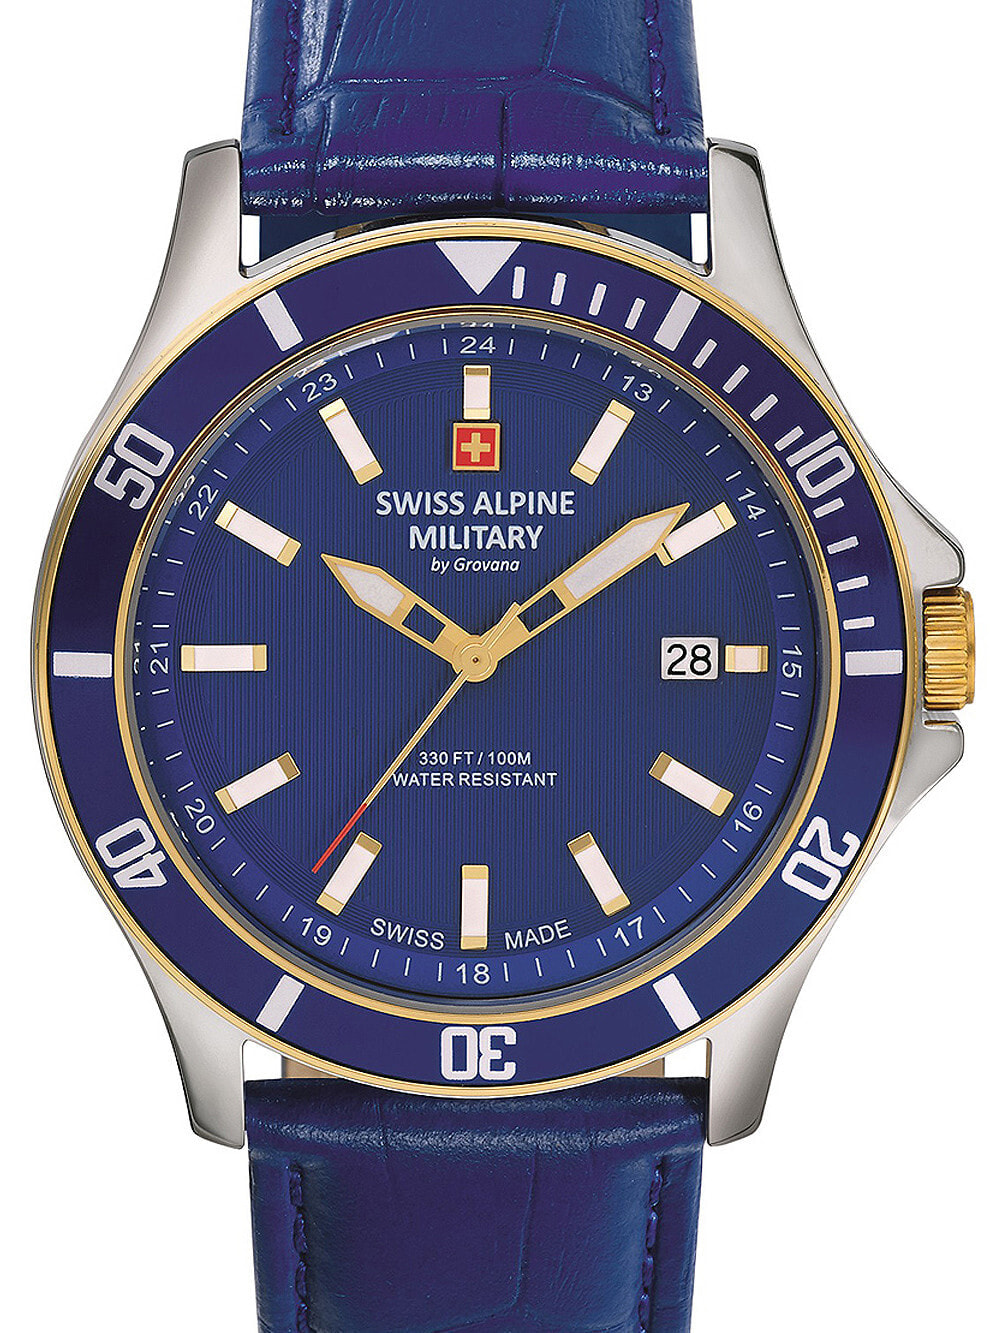 Мужские наручные часы с синим кожаным ремешком  Swiss Alpine Military 7022.1545 mens 42mm 10ATM